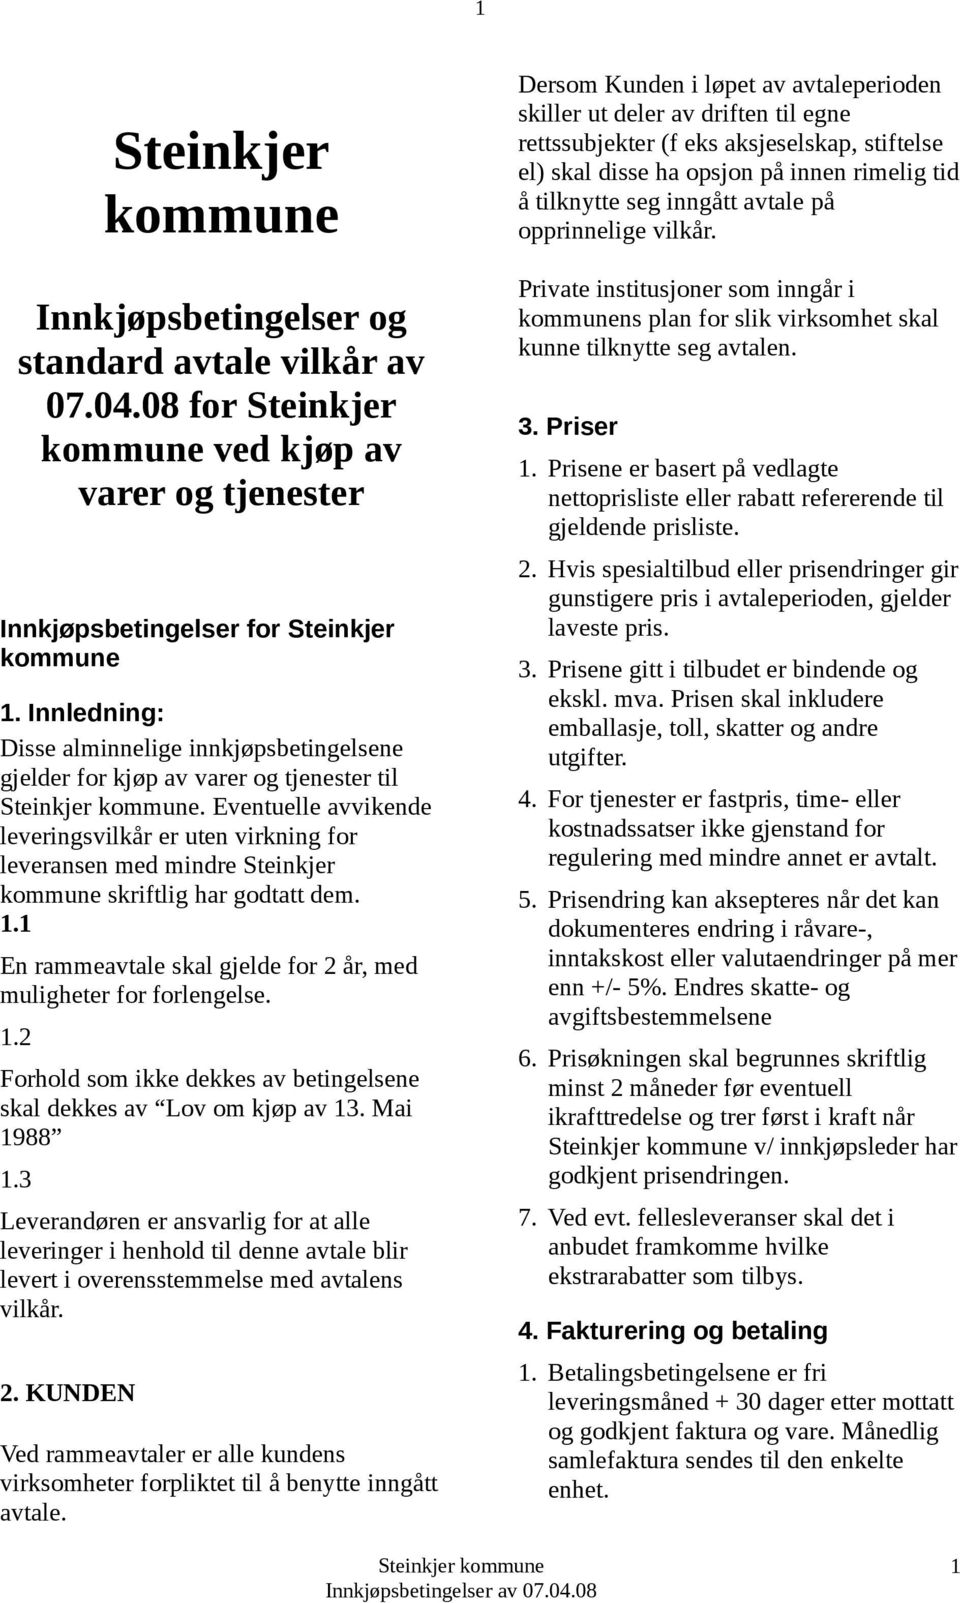 Eventuelle avvikende leveringsvilkår er uten virkning for leveransen med mindre Steinkjer kommune skriftlig har godtatt dem. 1.